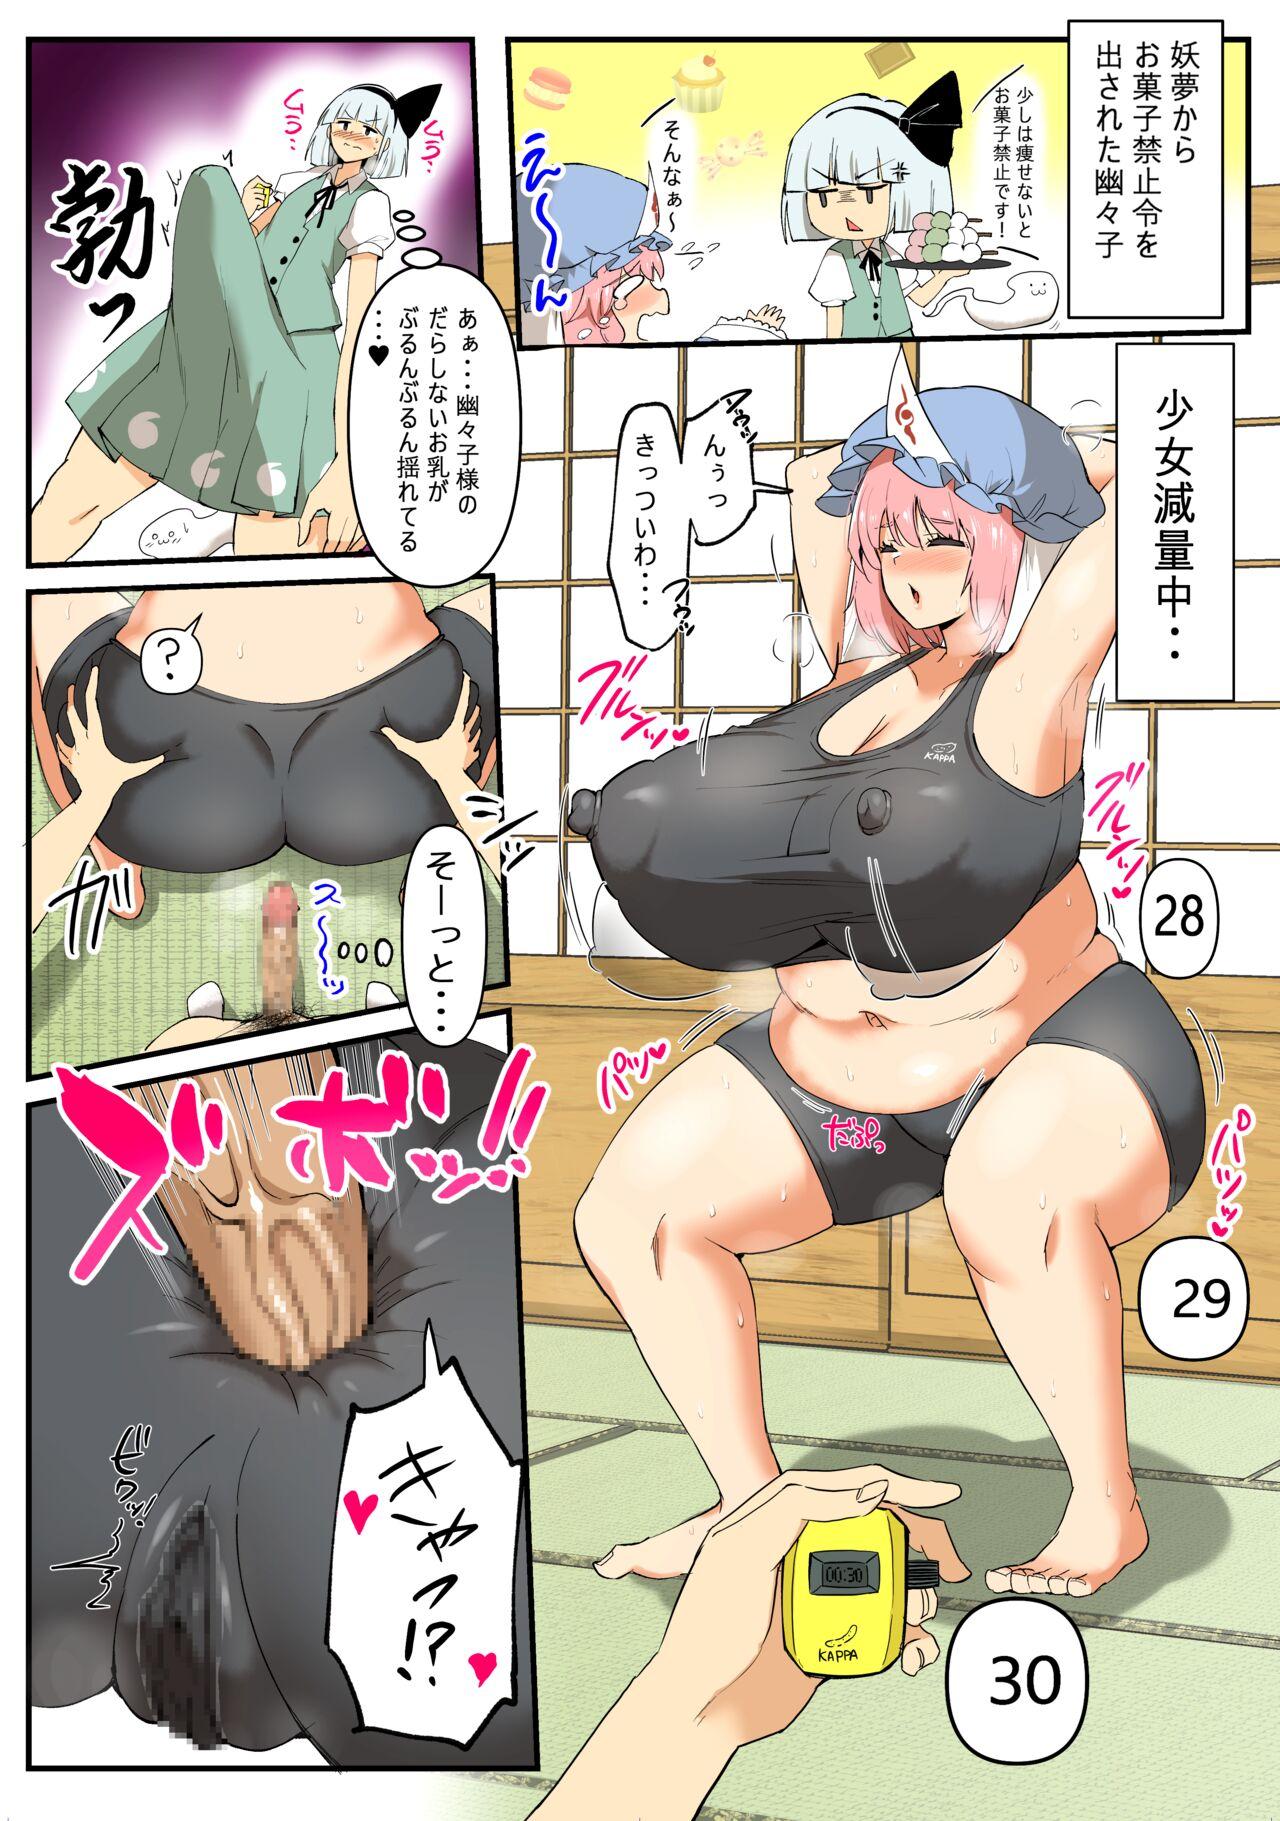 Yuyuko-sama no Diet Sex Manga 0